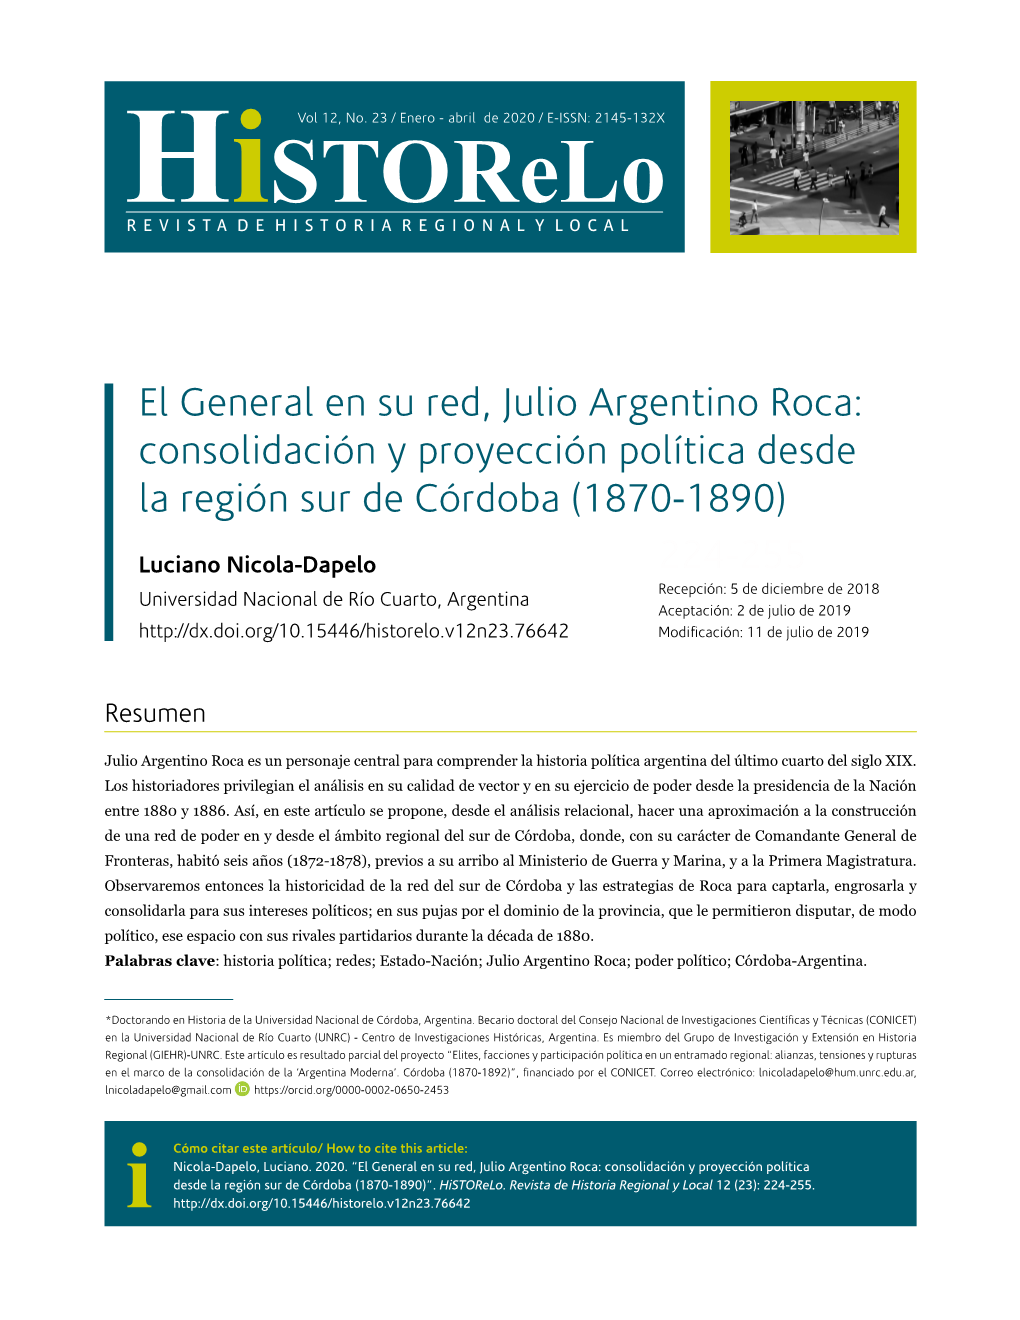 El General En Su Red, Julio Argentino Roca: Consolidación Y Proyección Política Desde La Región Sur De Córdoba (1870-1890)